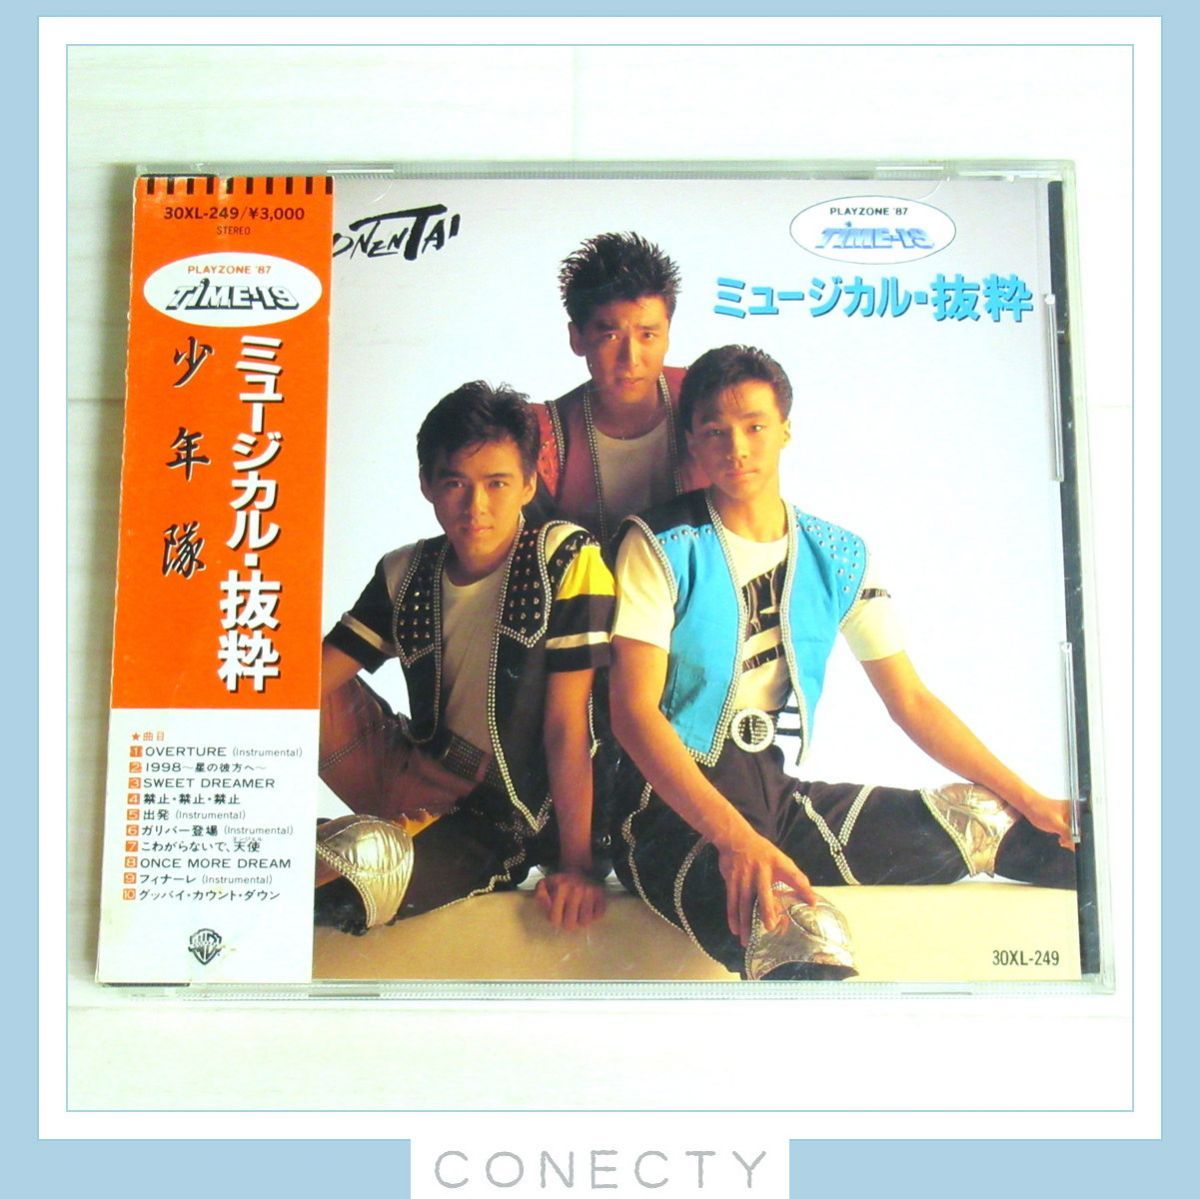 首相官邸 少年隊 PLAYZONE 1987 ミュージカル抜粋 CD | www